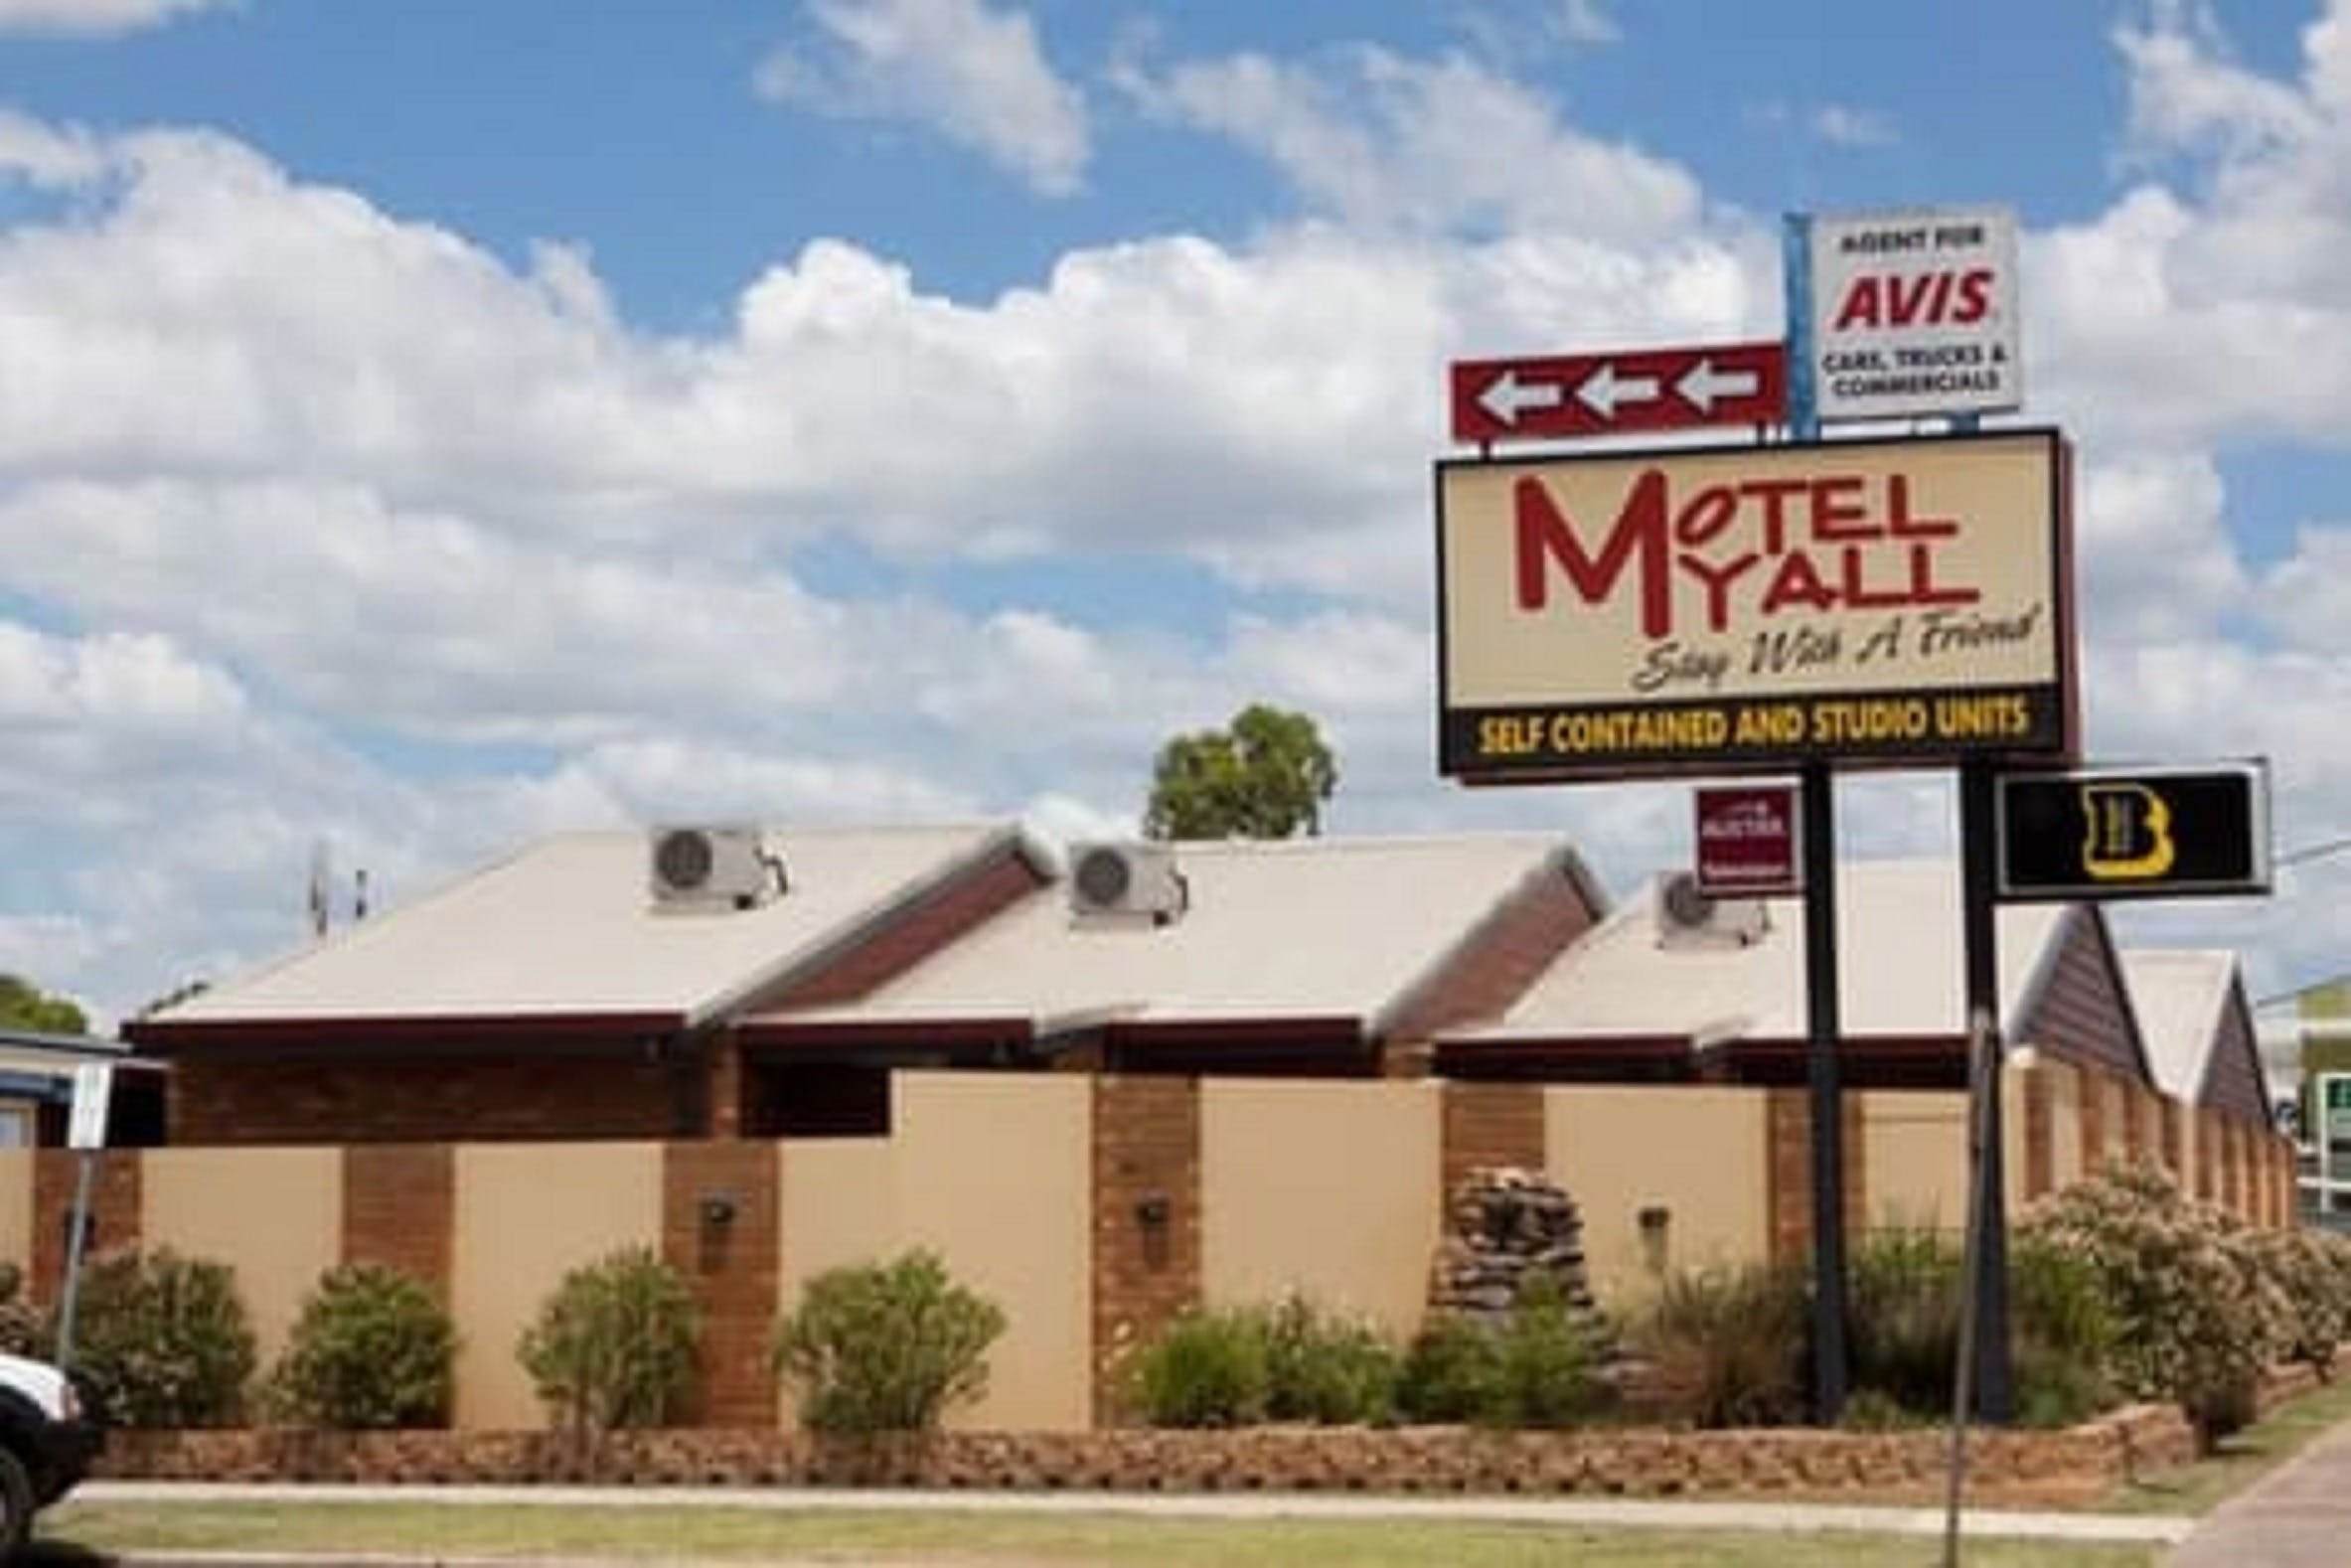 Motel Myall - Accommodation in Bendigo